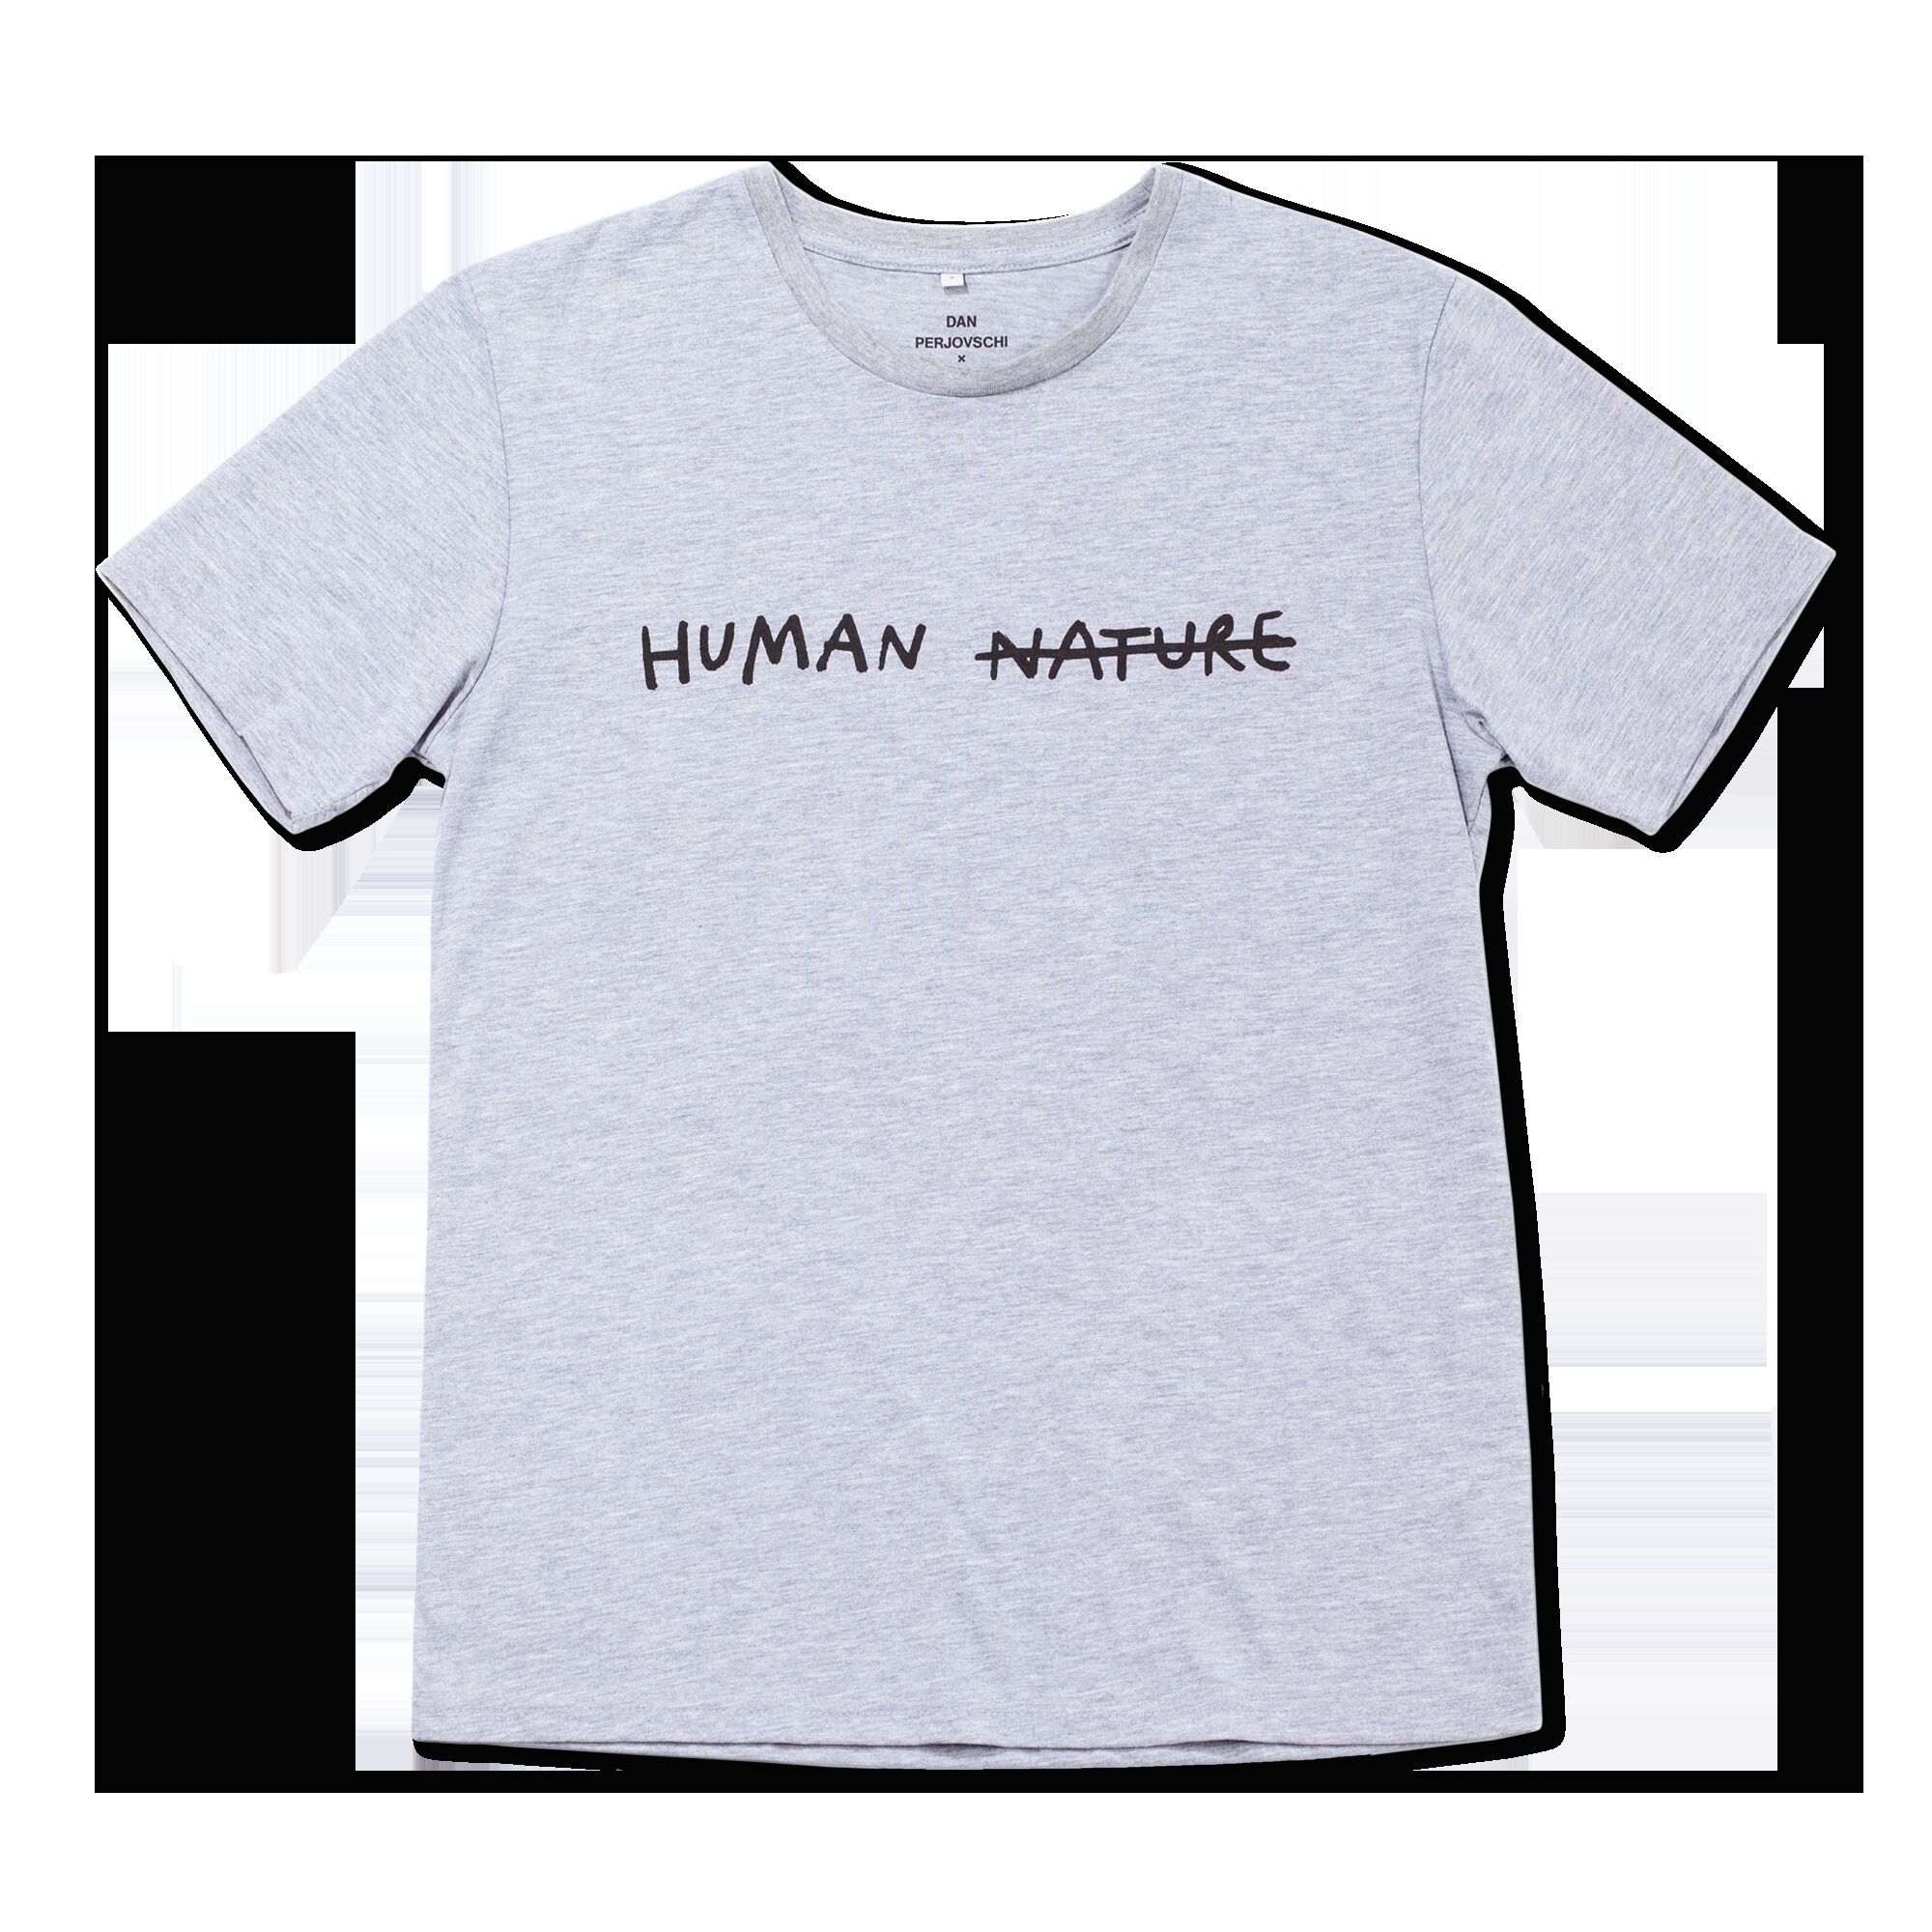 Human Nature T-shirt